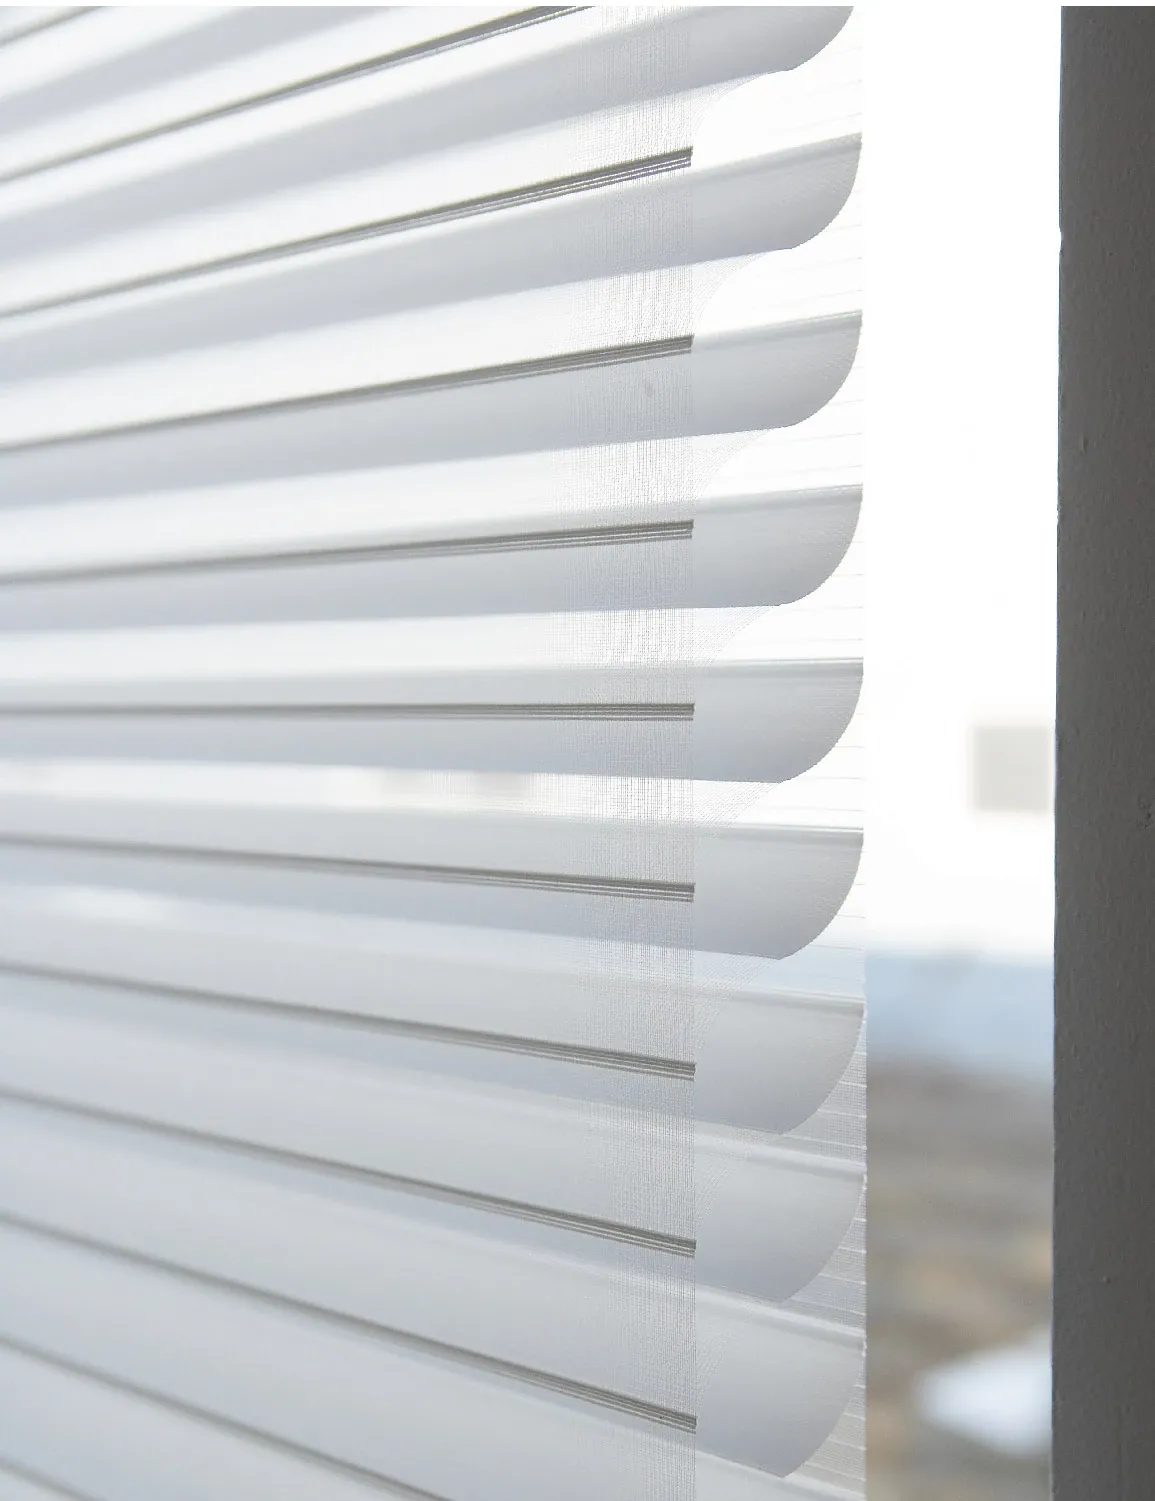 Esta persiana enrollable tiene tablones semi opacos entre dos lienzos traslúcidos. Se puede controlar el paso de la luz con los tablones, o enrollar por completo para revelar el claro de la ventana.